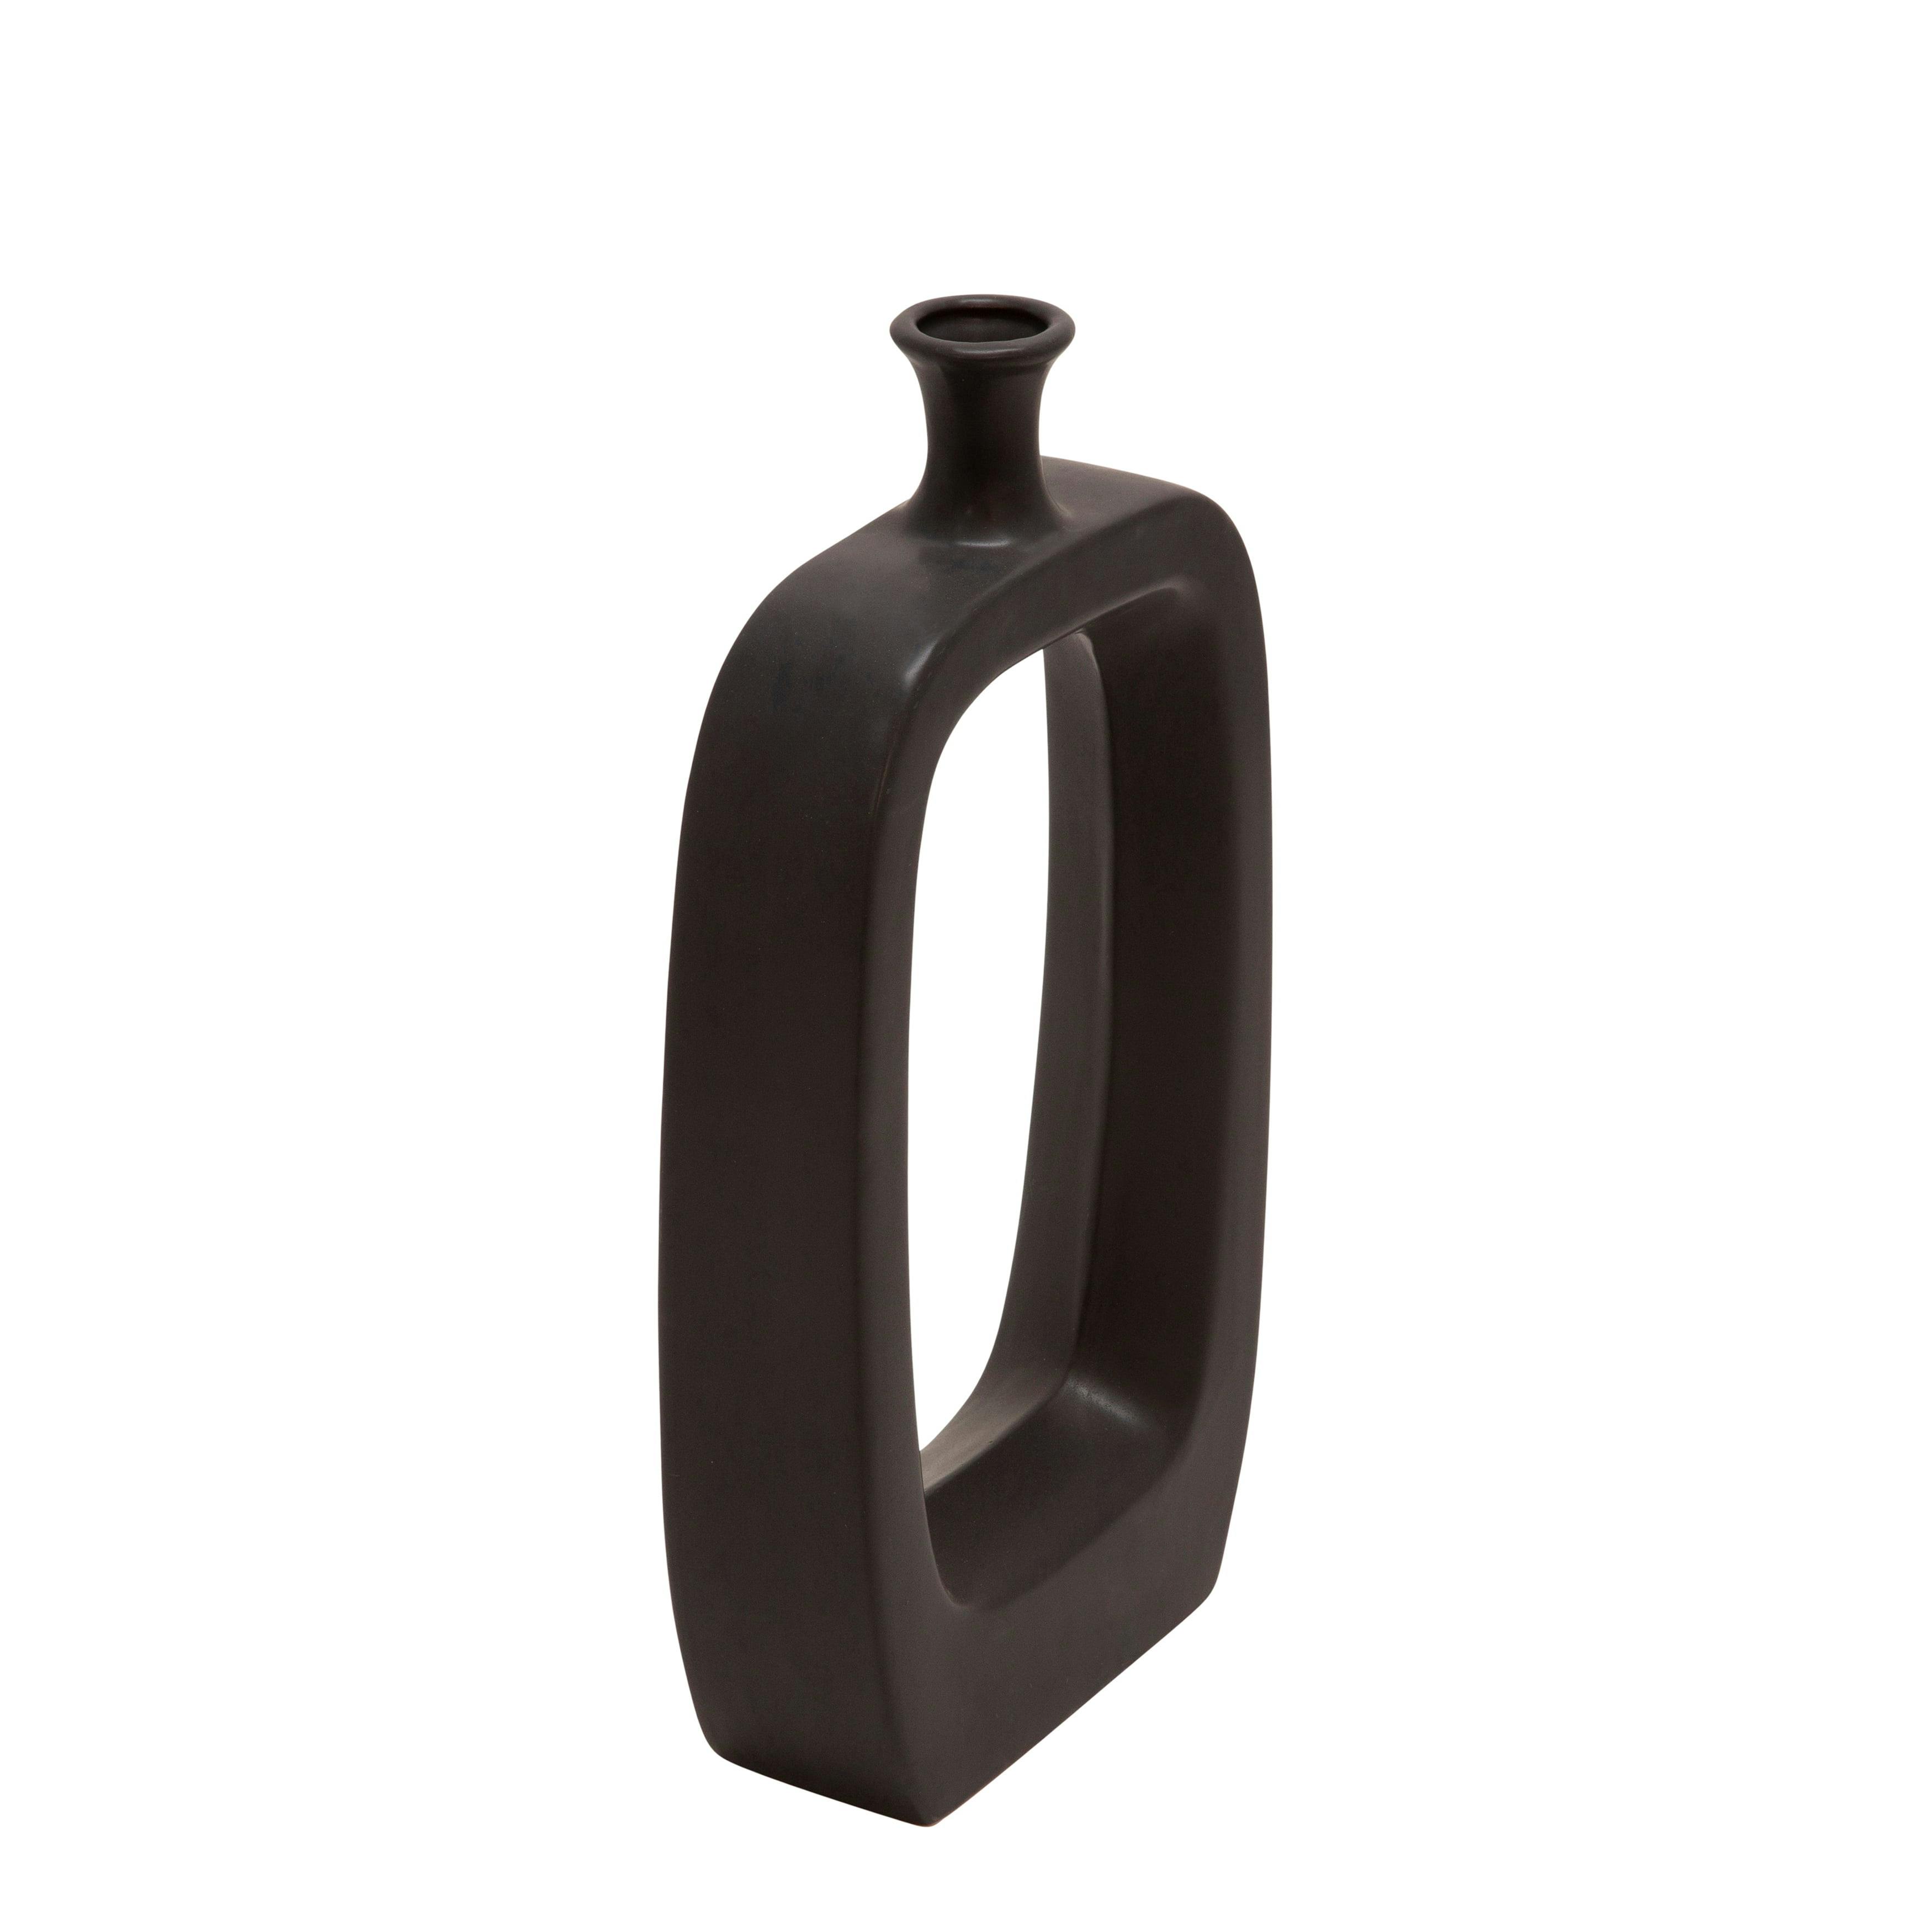 Elegant Black Ceramic Bouquet Vase 18" with Center Cutout